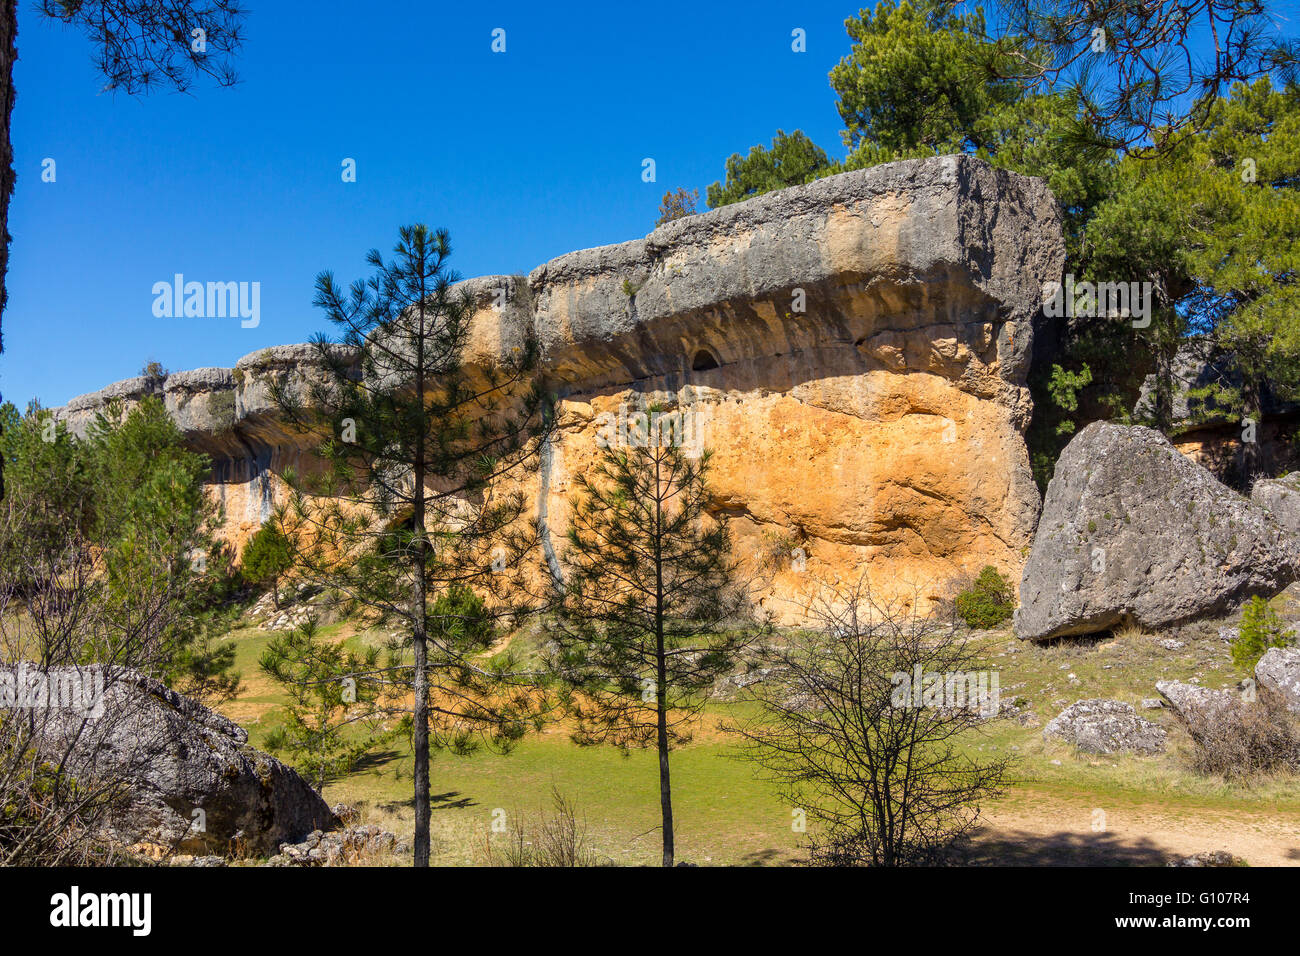 Des rochers avec des formes capricieuses dans la ville enchantée de Cuenca, Espagne Banque D'Images